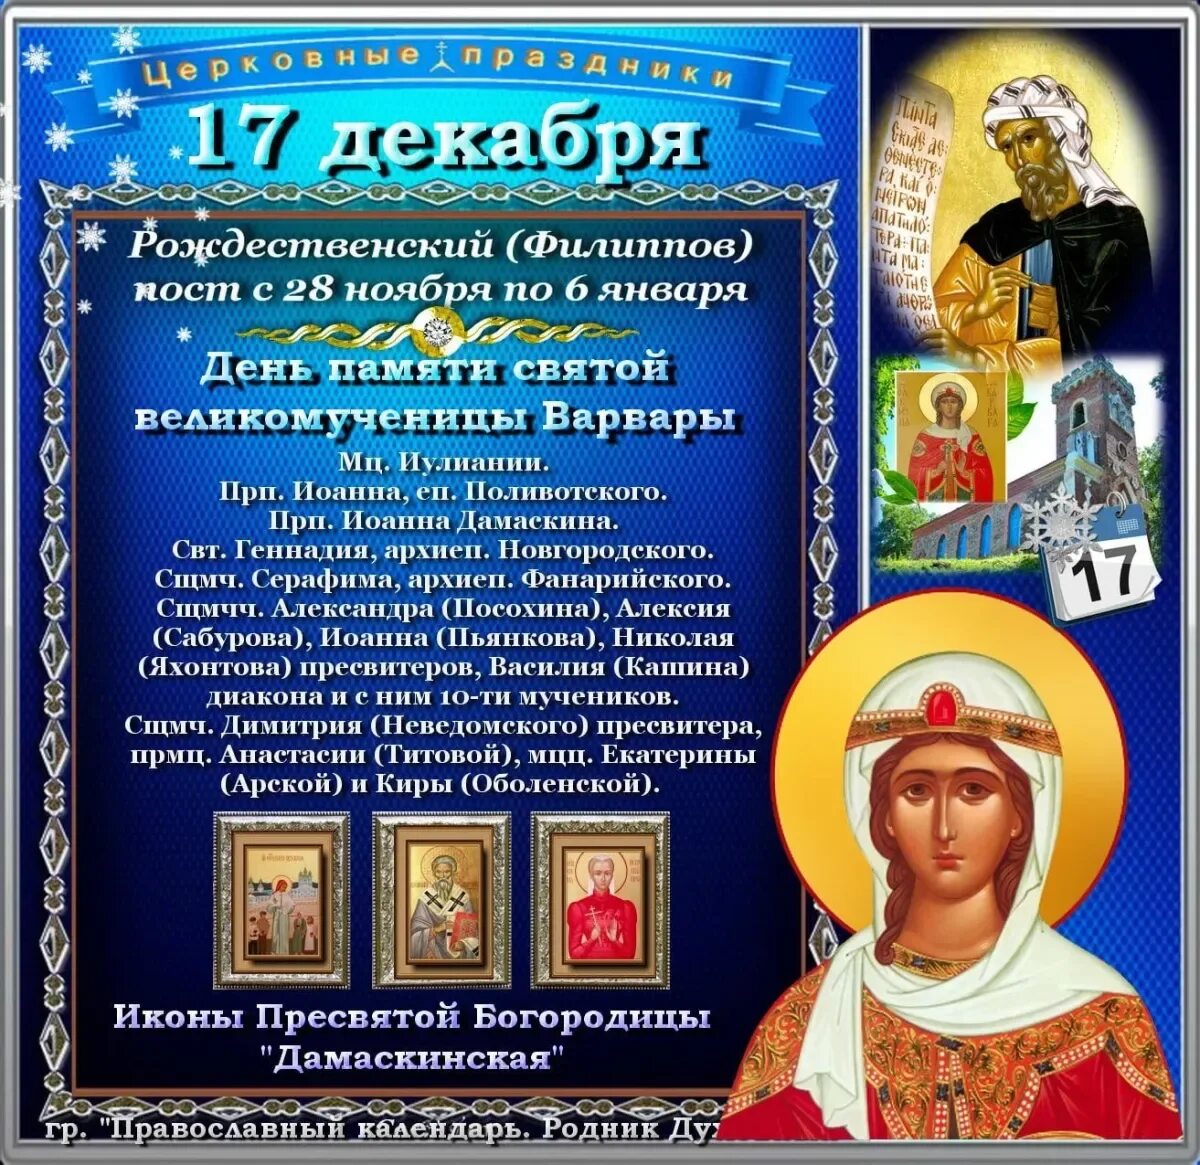 17 Декабря праздник. 17 Декабря православный. Святые дня 17 декабря. 17 Декабря православный календарь. 6 апреля православный календарь